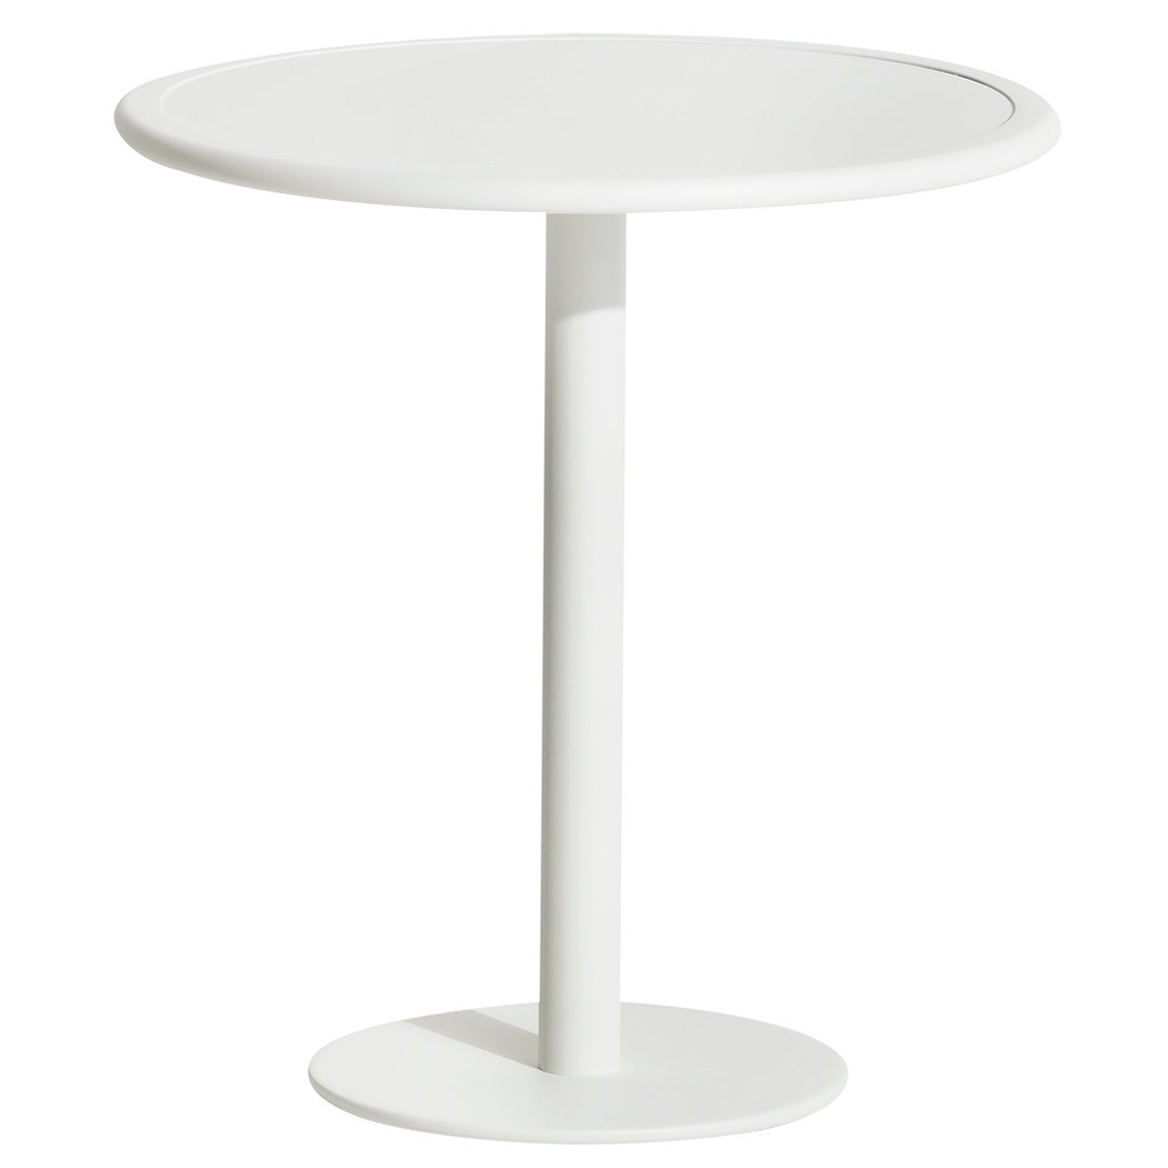 Petite table de salle à manger ronde bistro Week-end en aluminium blanc, de Friture, 2017 en vente